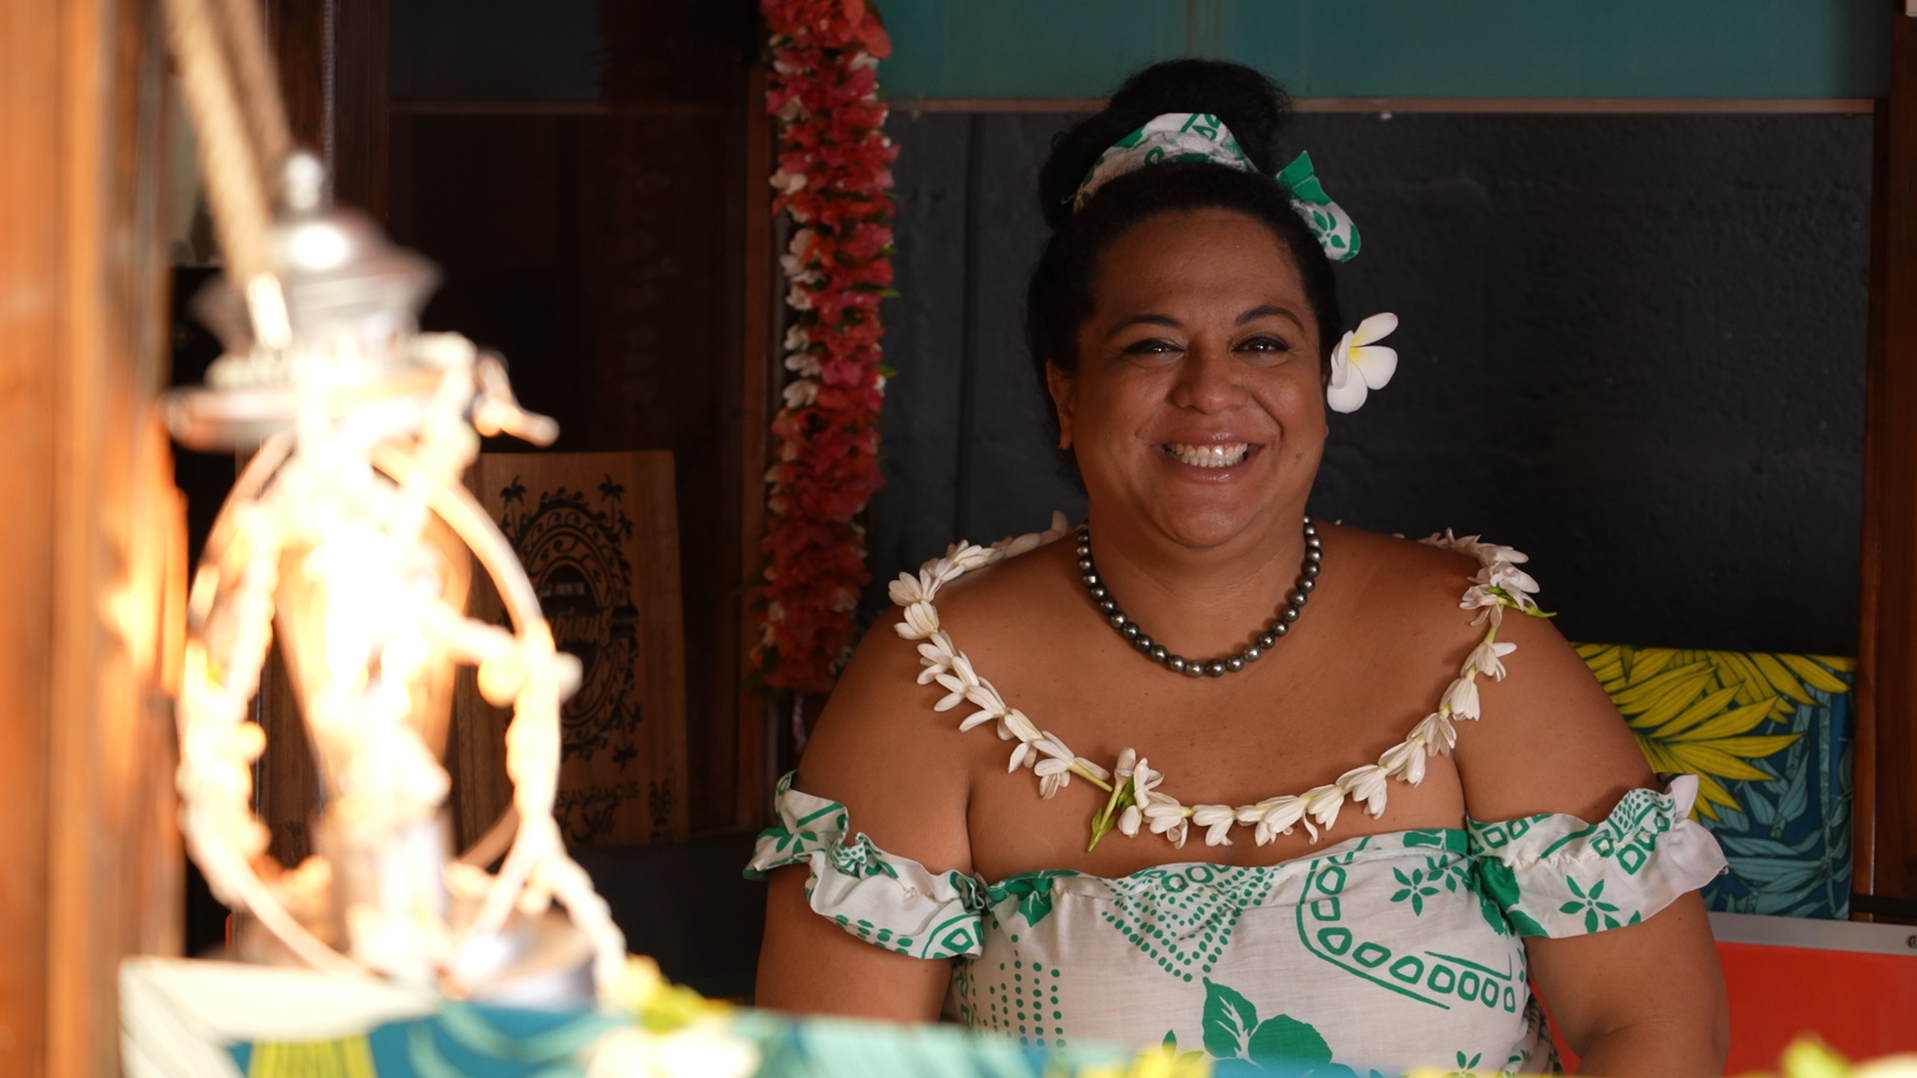 Hinatea Colombani, la nouvelle présentatrice. Professeure de ‘ori tahiti, influenceuse et ambassadrice culturelle, elle a fondé le centre ‘Arioi à Papara en 2006. Elle est familière du secteur touristique.